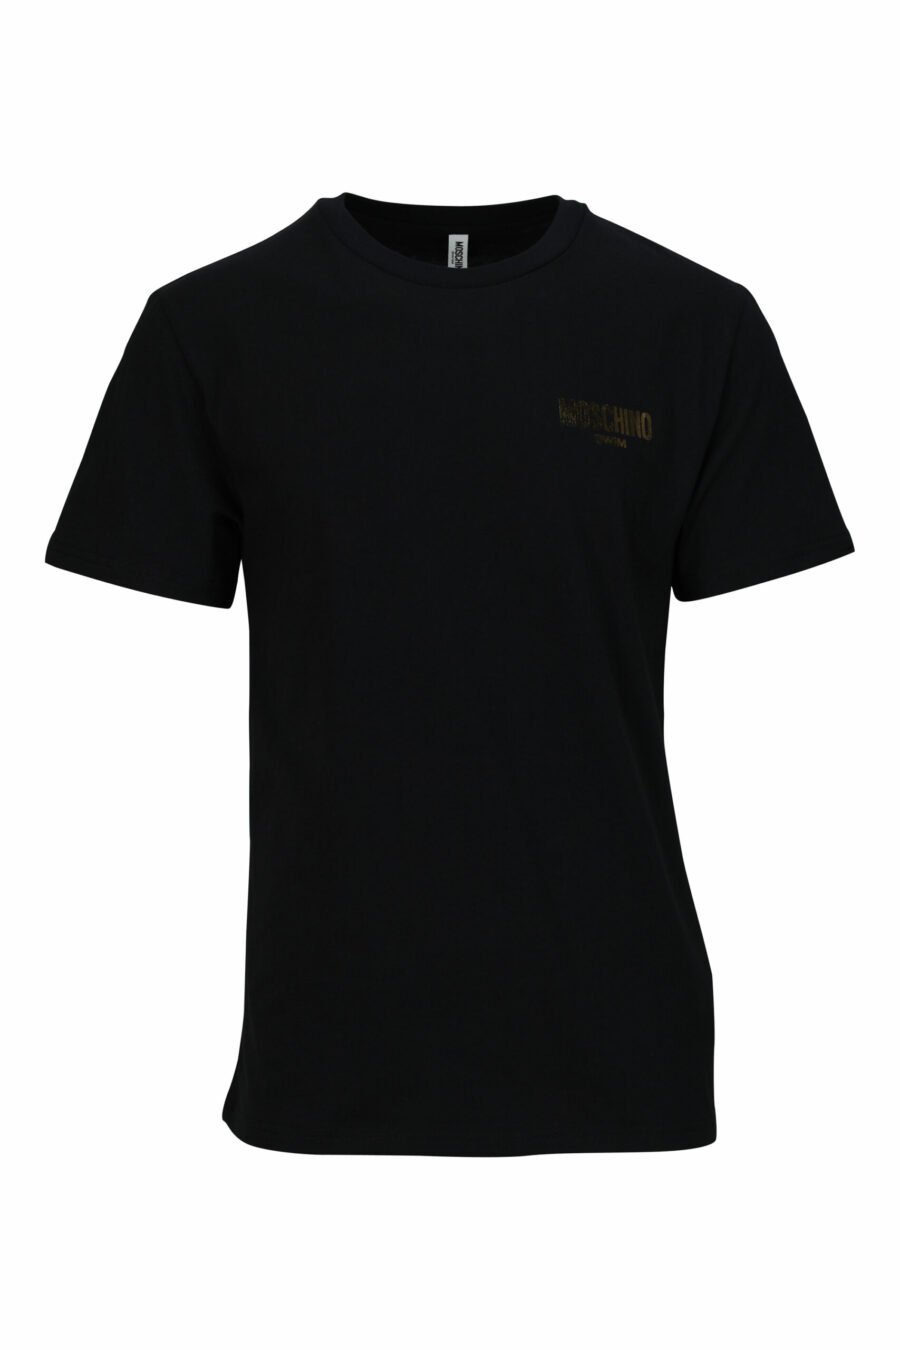 T-shirt noir avec minilogue doré "nage" - 667113673073